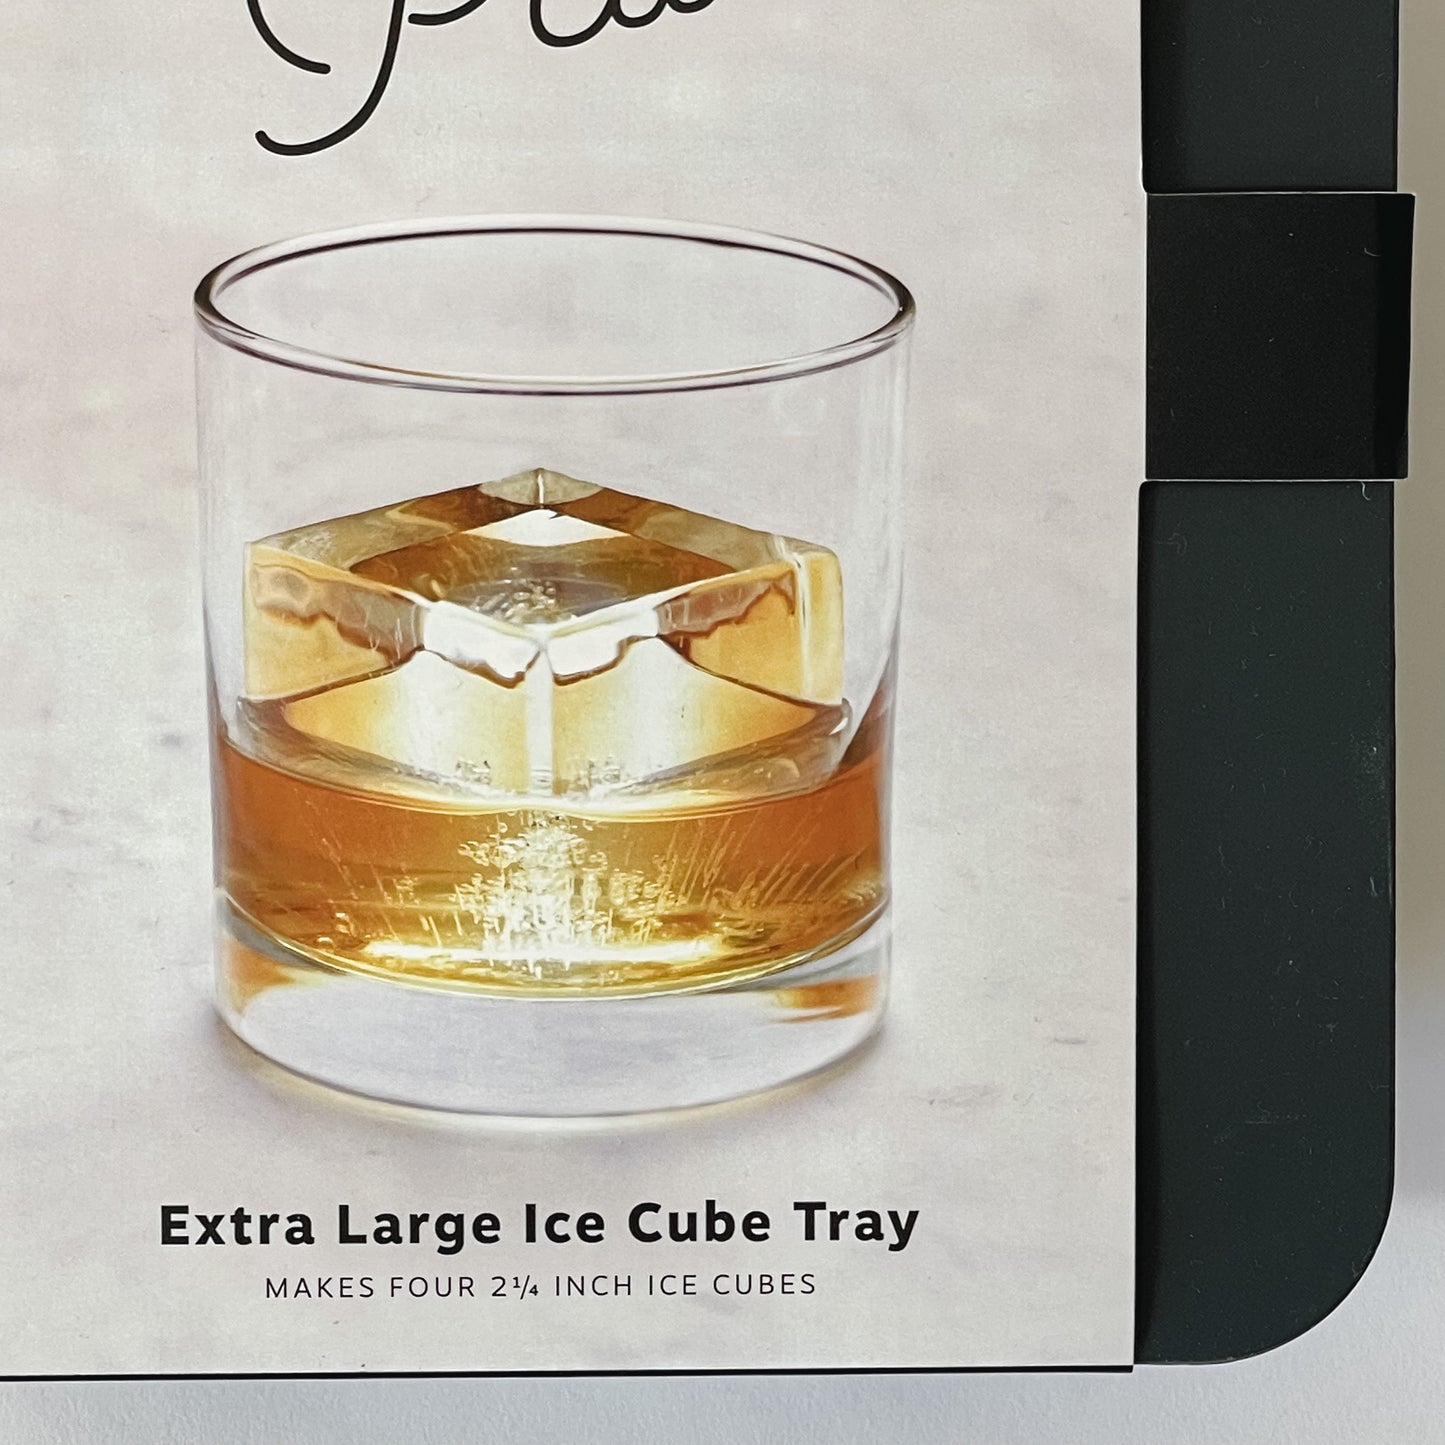 Peak Large Cube Tray